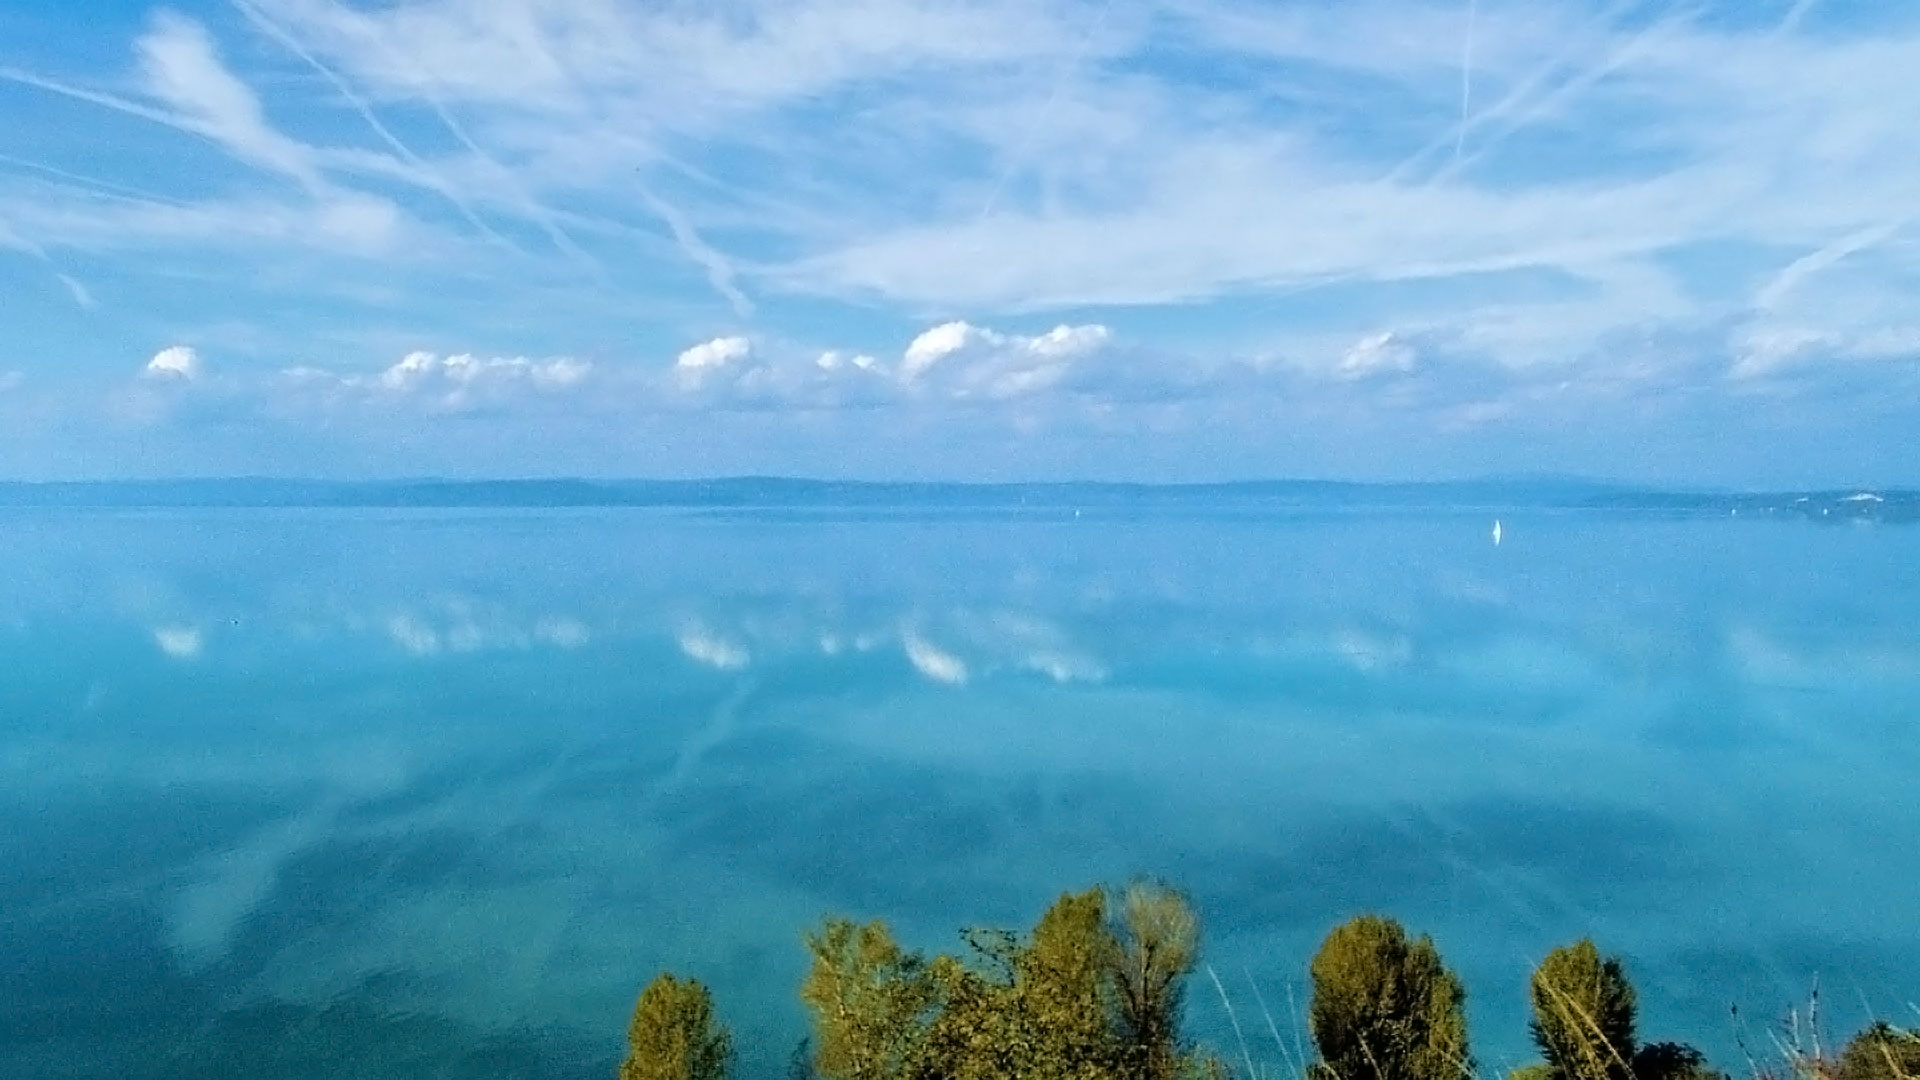 Balatonvilágos magas partjáról letekintve, a Balaton tengerszerű látványt nyújt